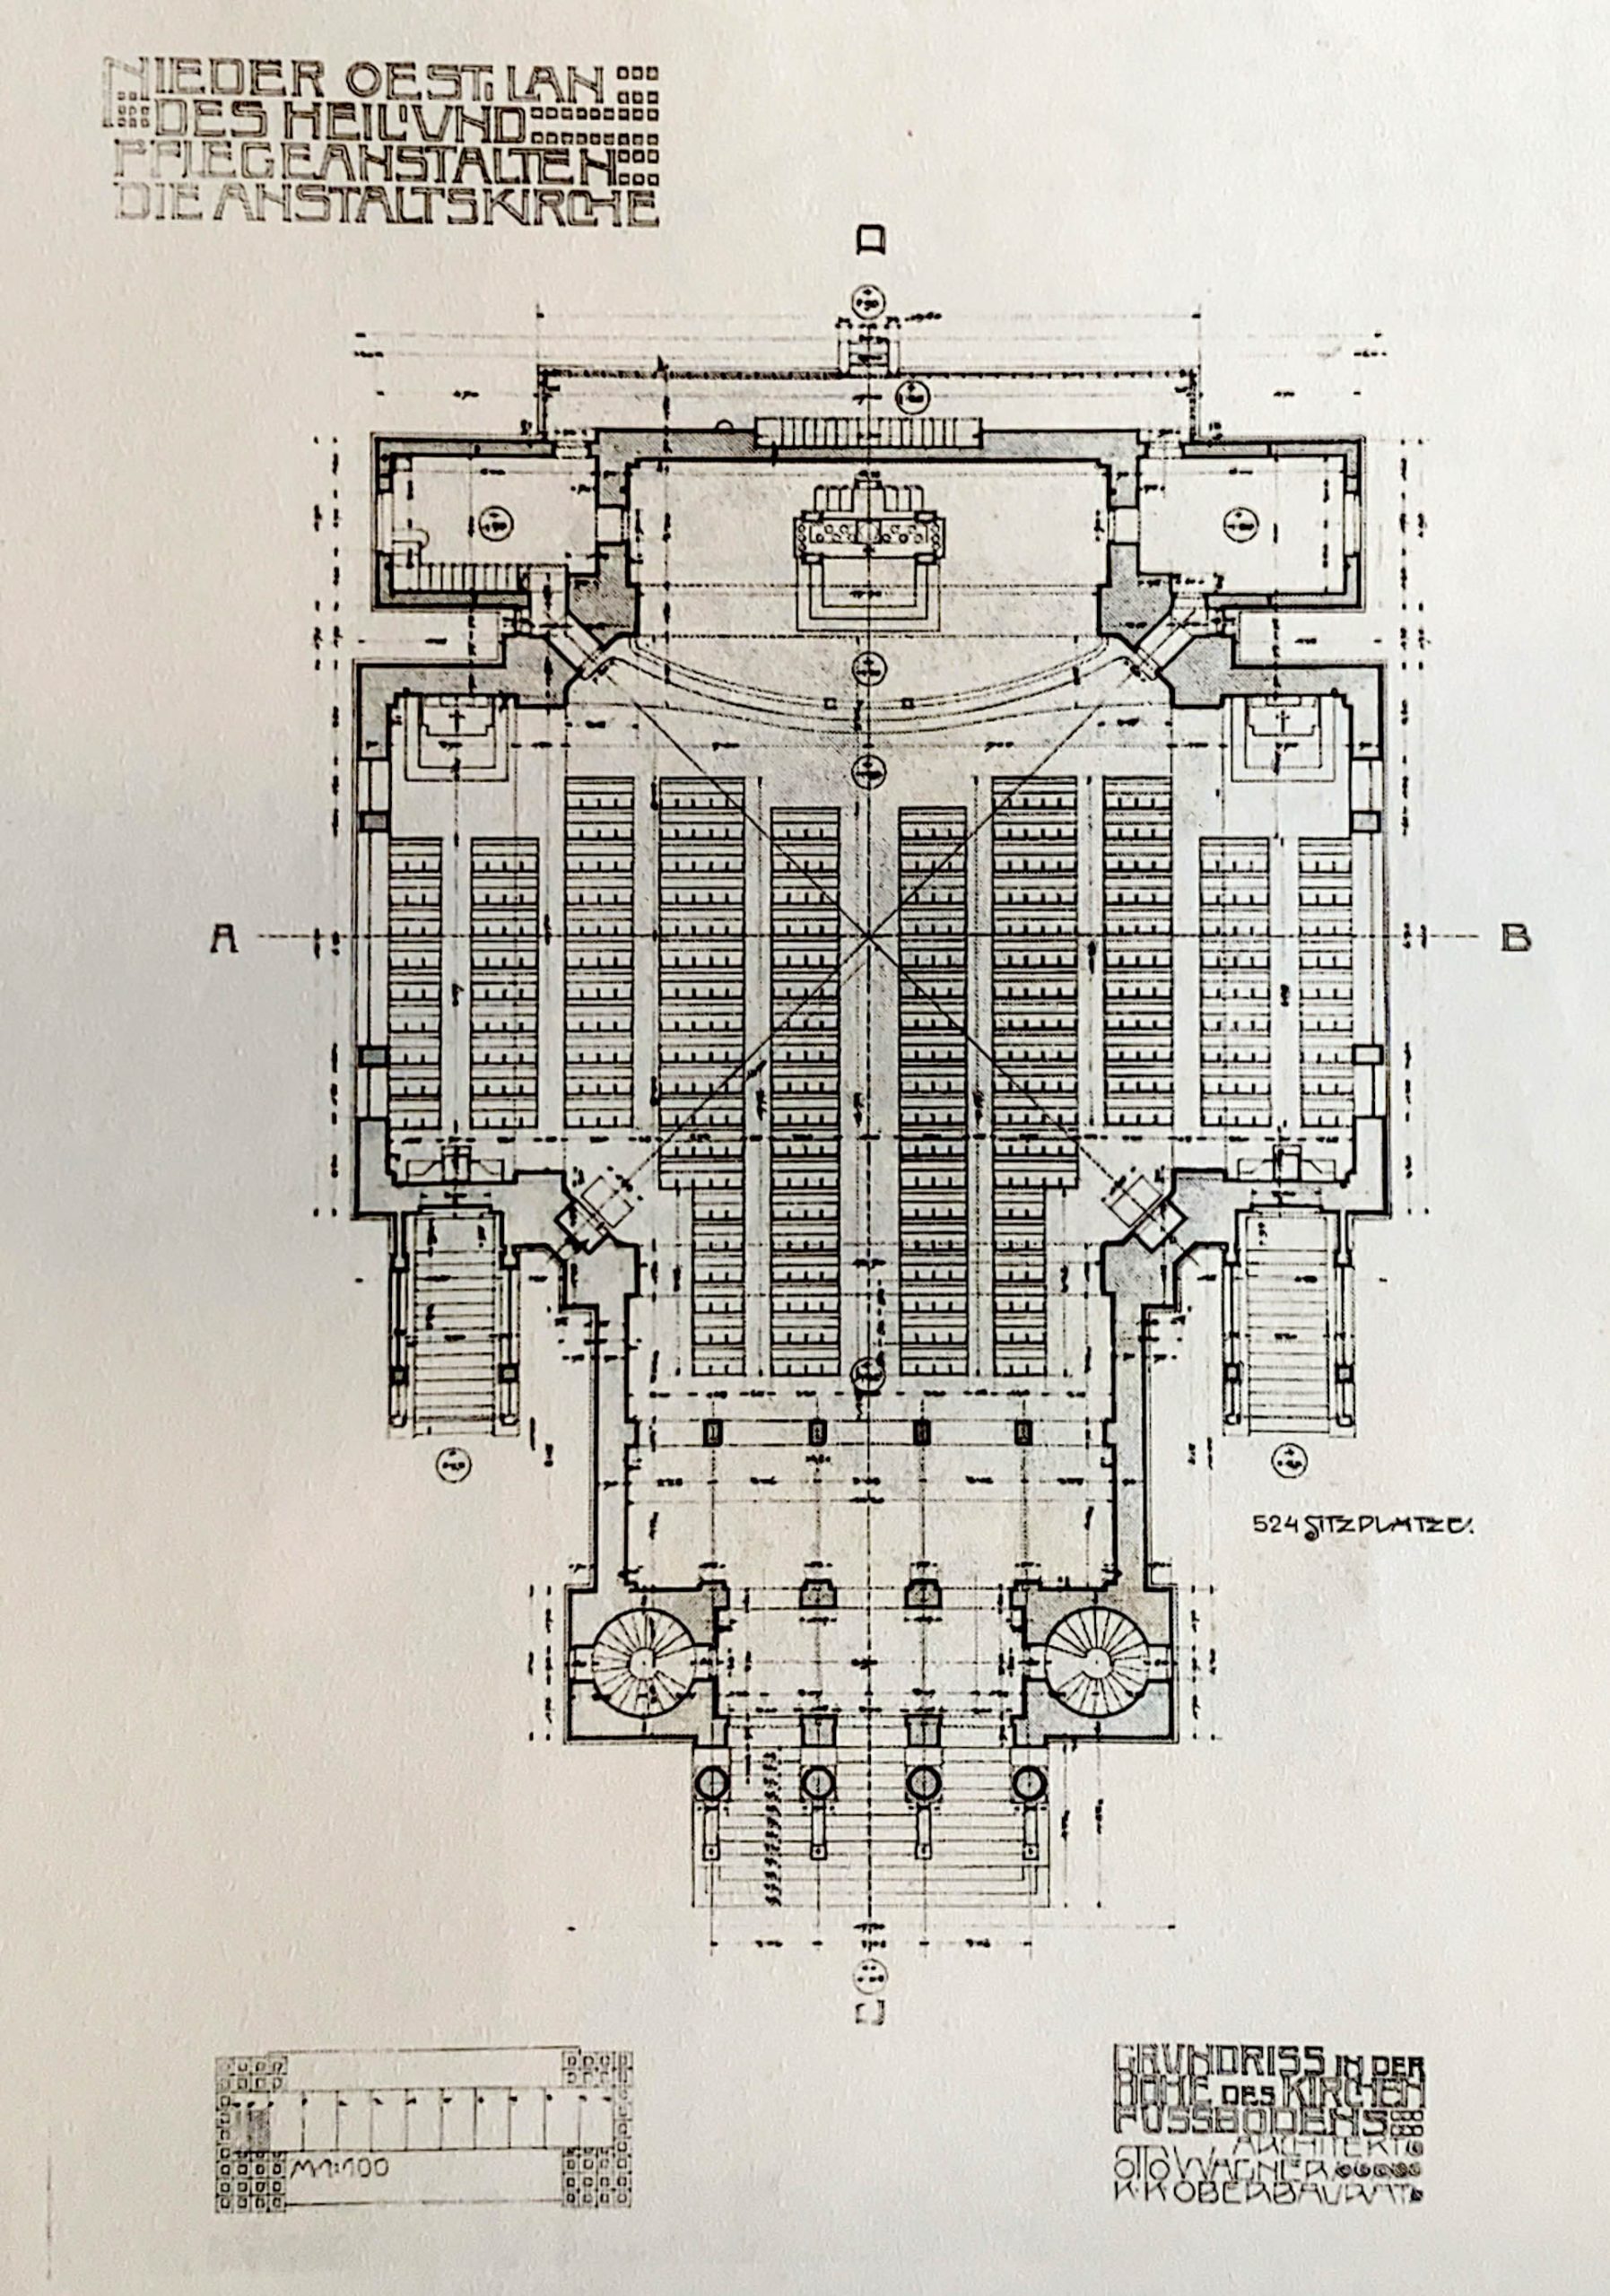 Kirche am Steinhof, floorplan, 1904-1907. Architect: Otto Wagner